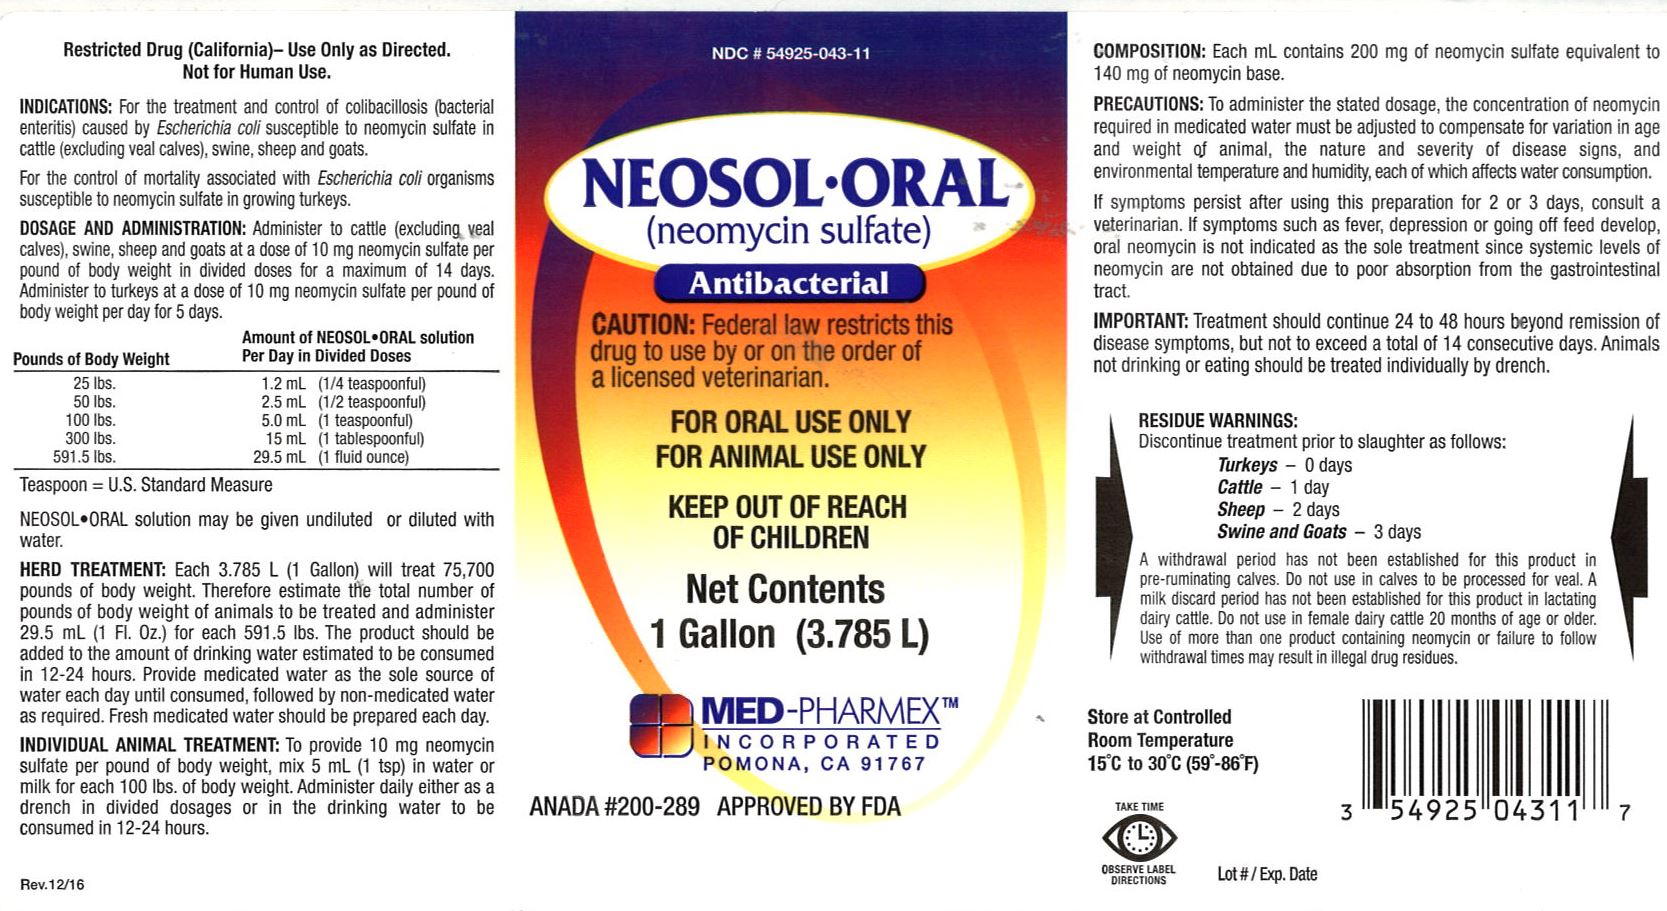 MPX Neosol-Oral 1 gallon label